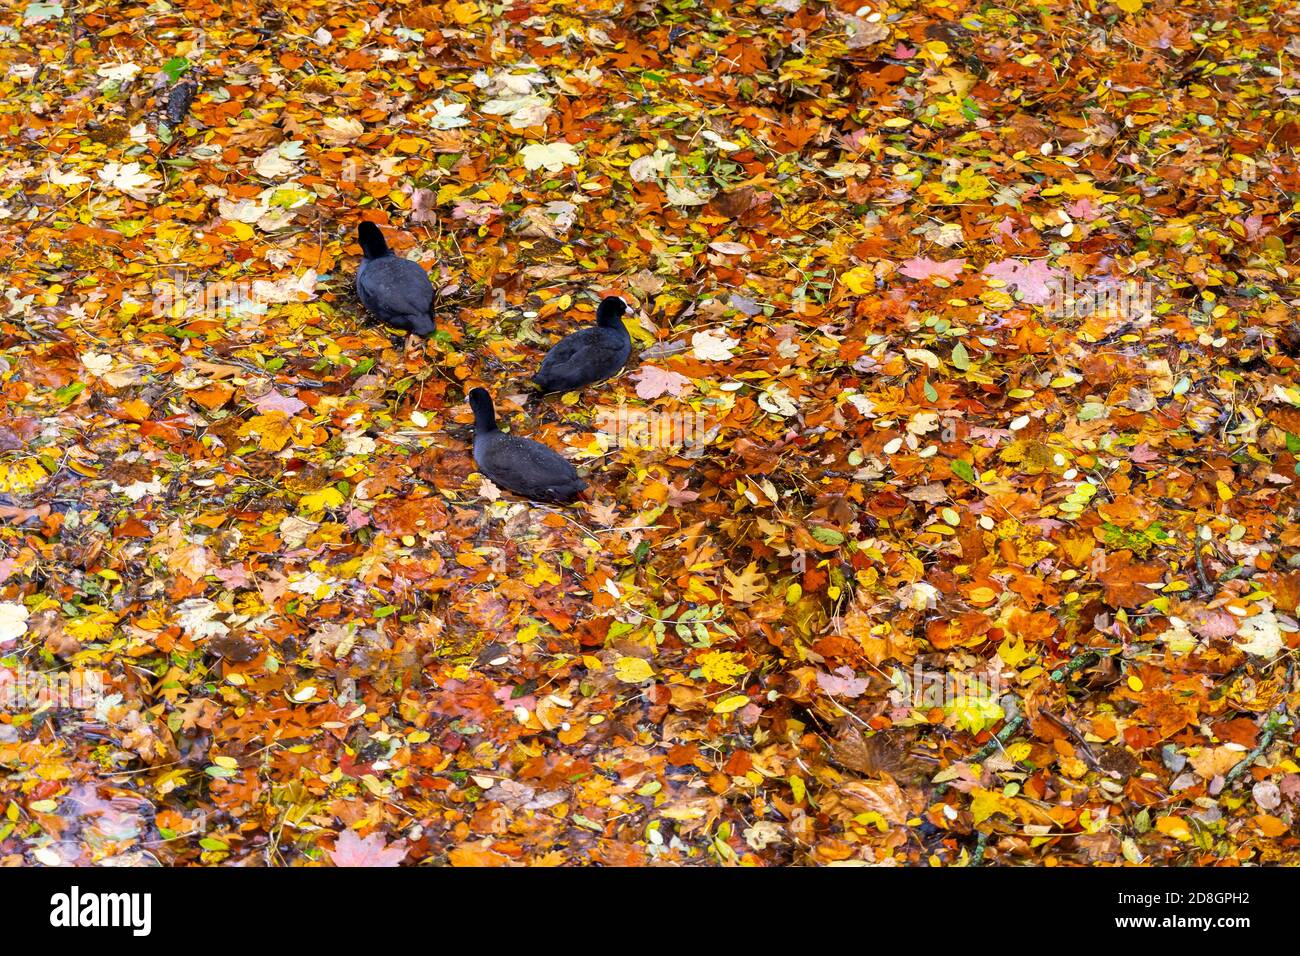 Bunter Blätter, Laub, im Herbst, schwimmen auf der Oberfläche eines Teichs, Regenwetter, Blässhühner schwimmen zwischen den Blättern, Stock Photo